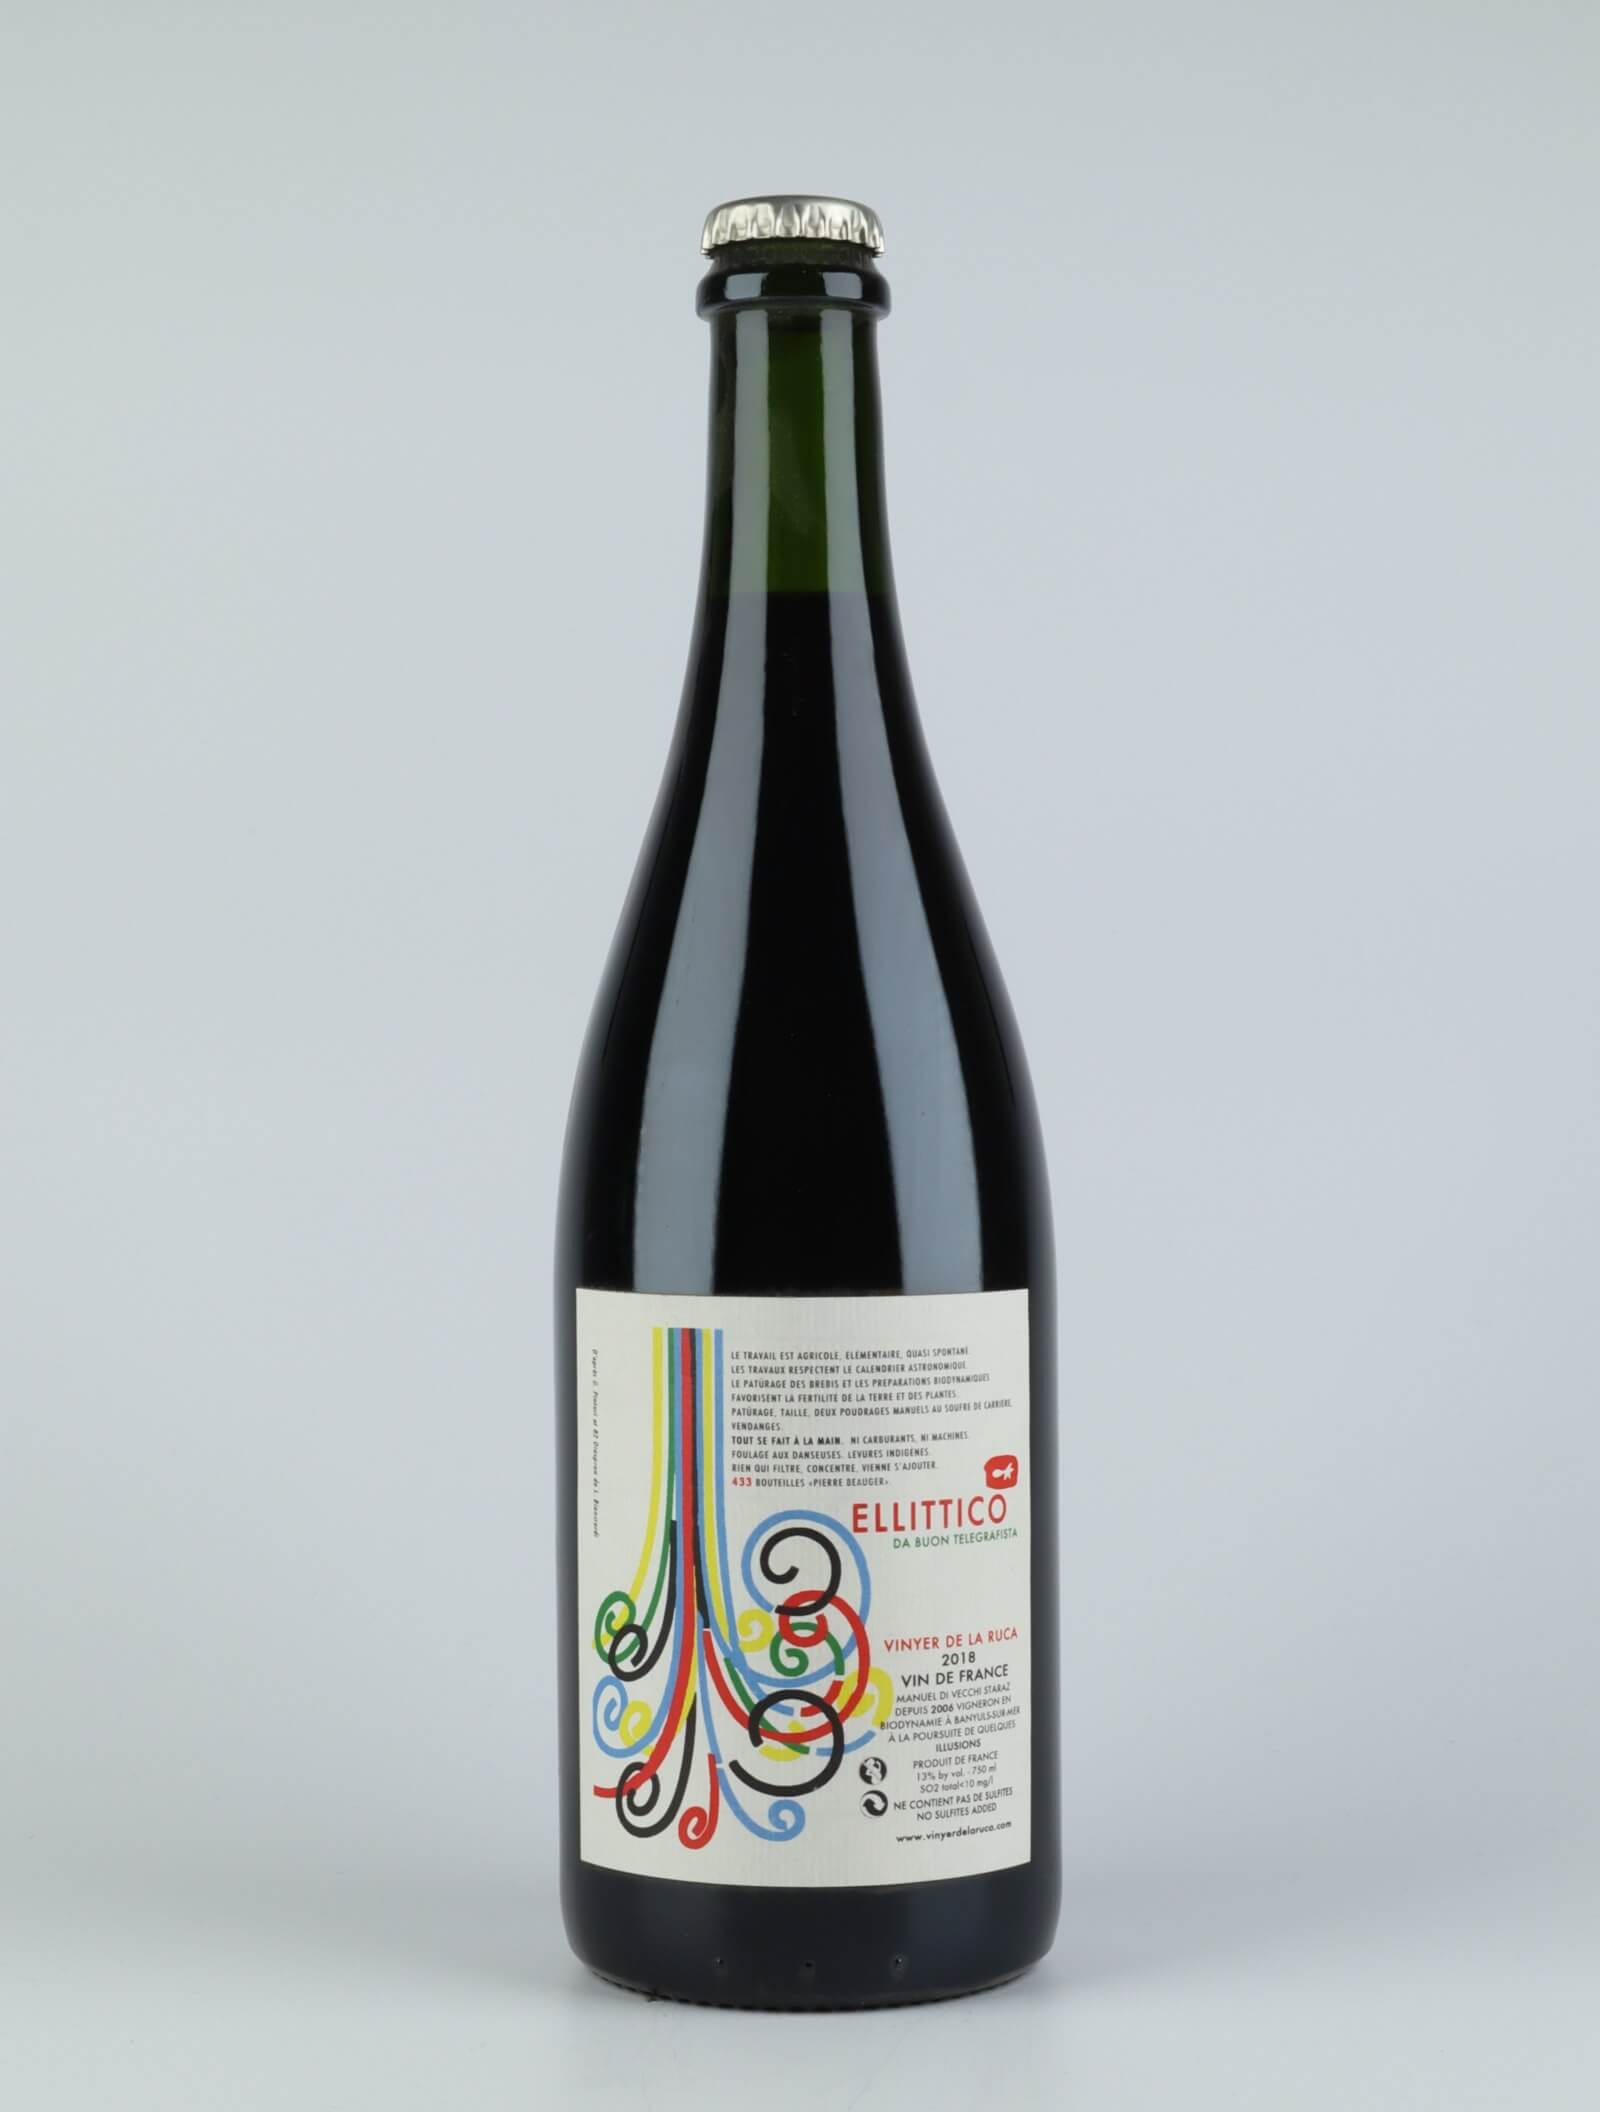 A bottle 2018 Ellittico Red wine from Vinyer de la Ruca, Rousillon in France